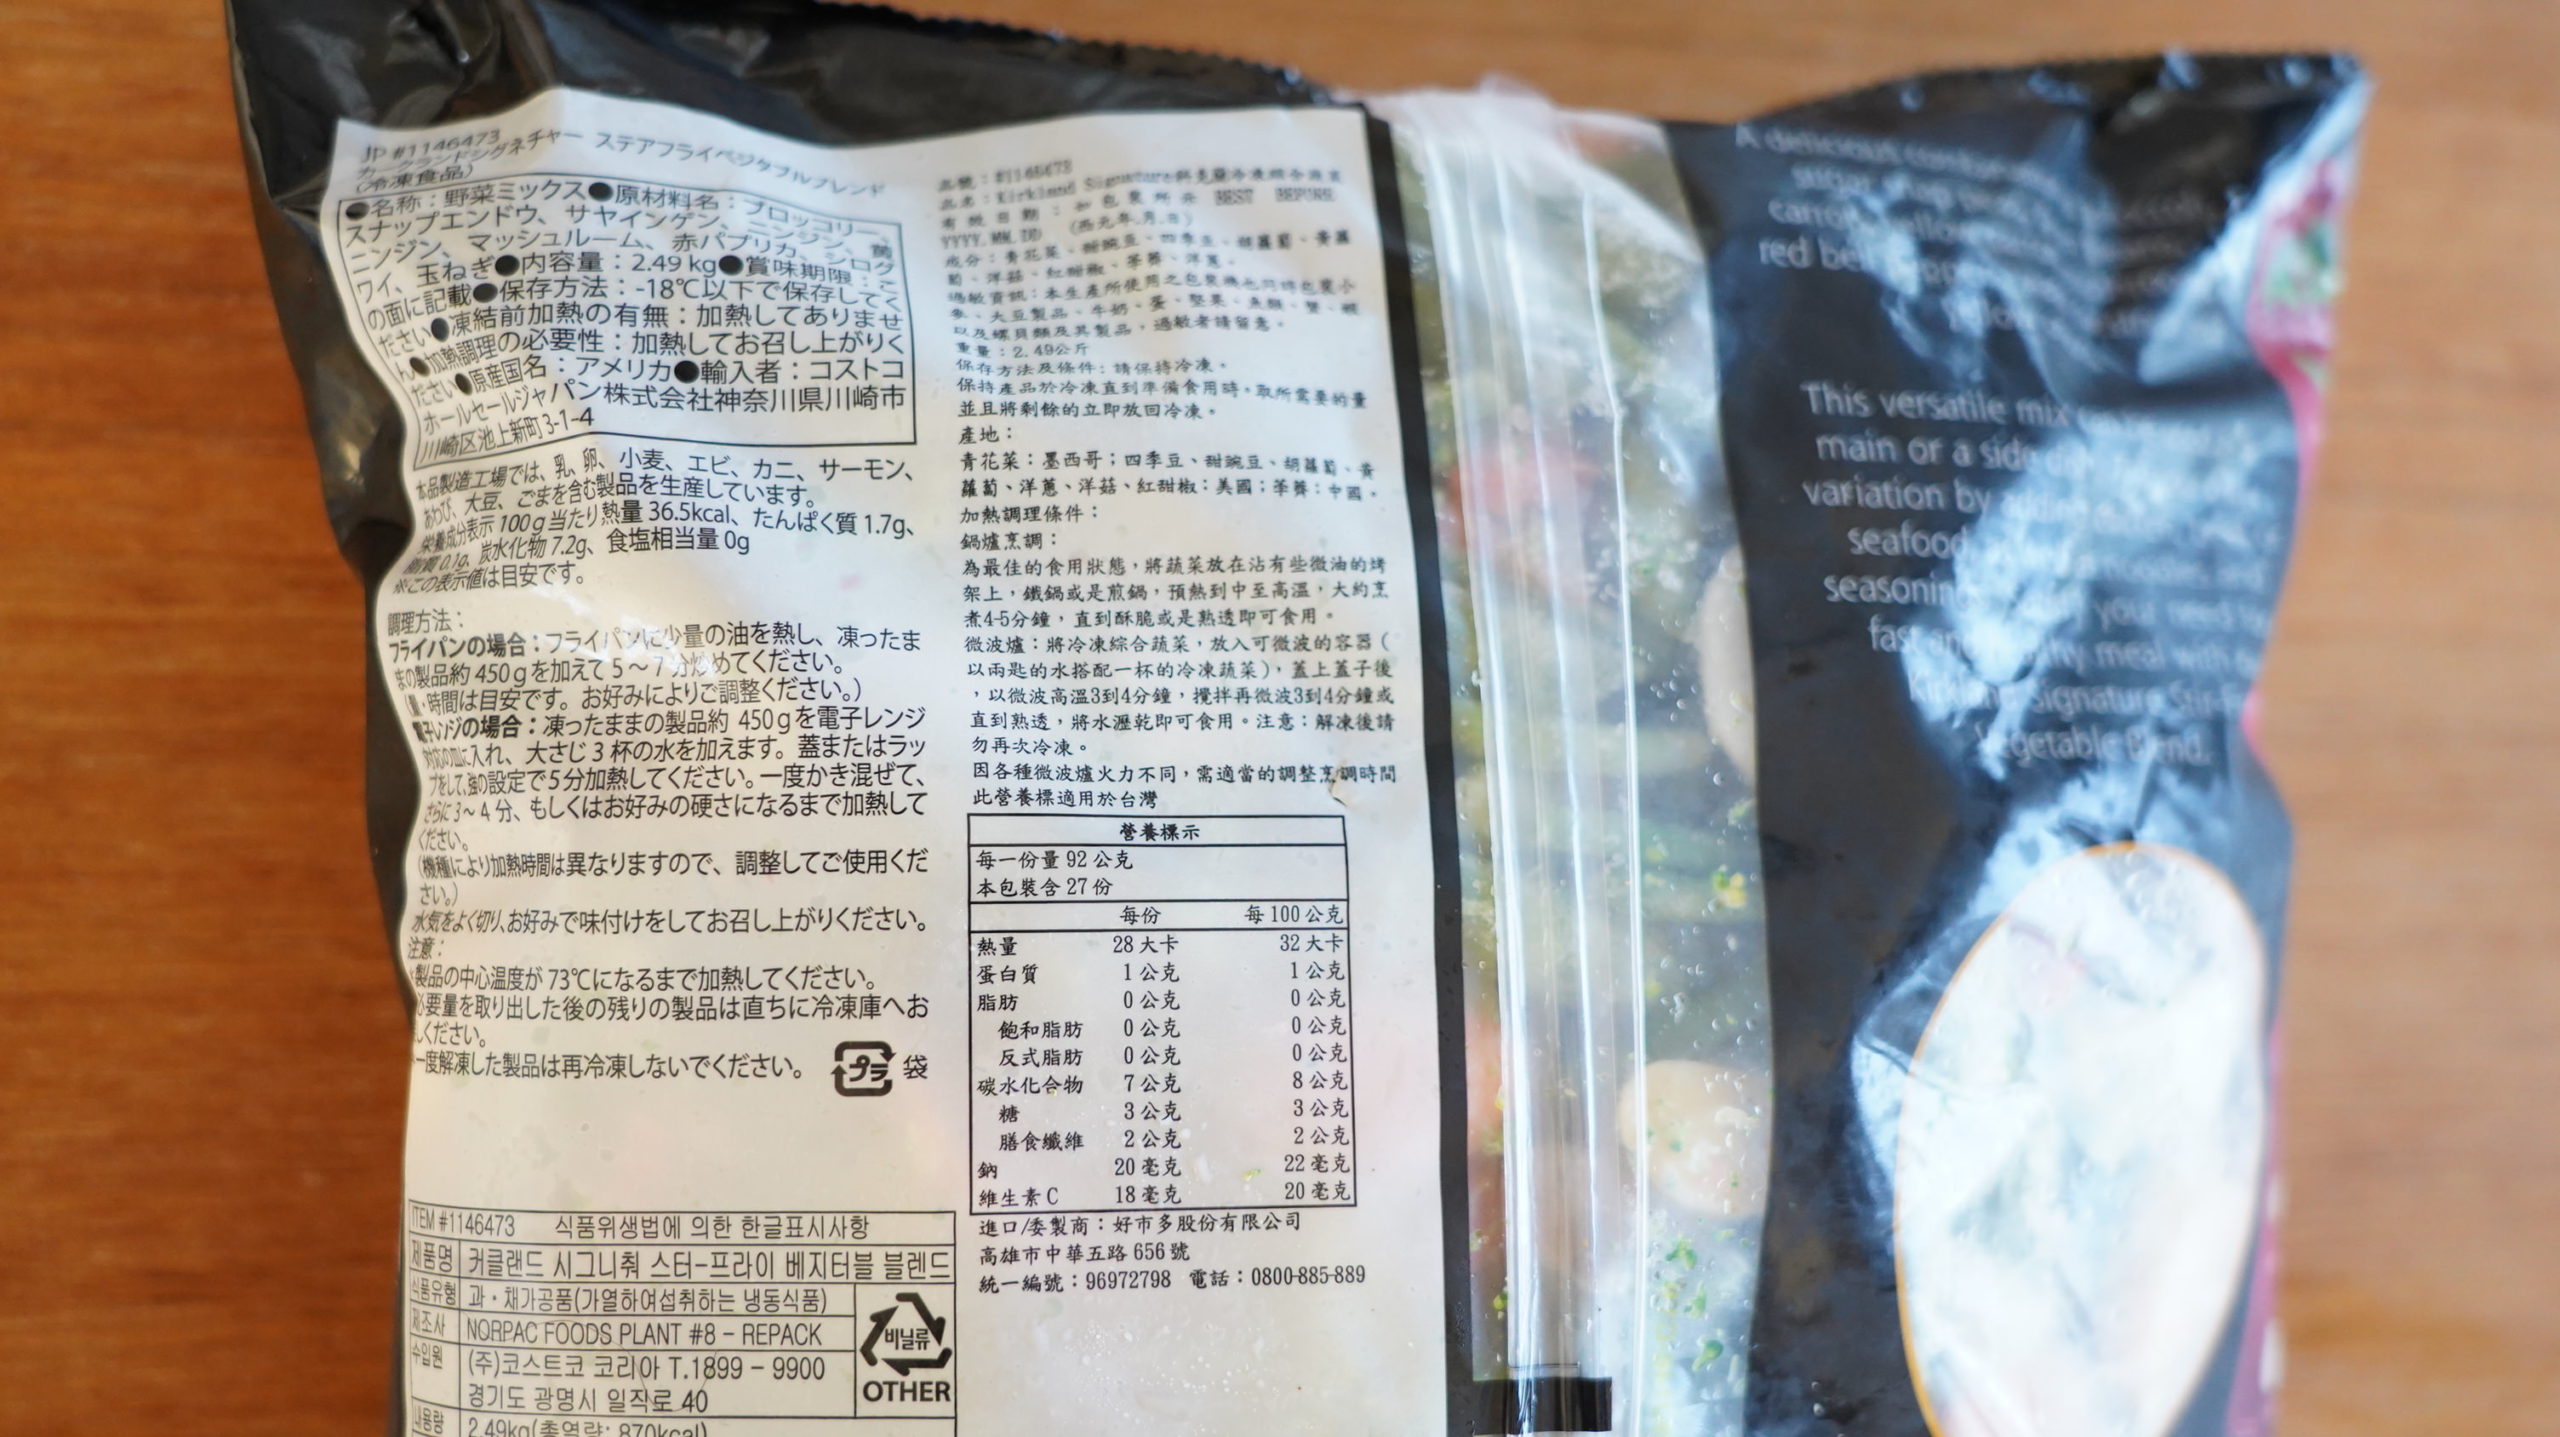 コストコの冷凍食品「ステアフライ・ベジタブルブレンド」のパッケージ裏面の拡大写真